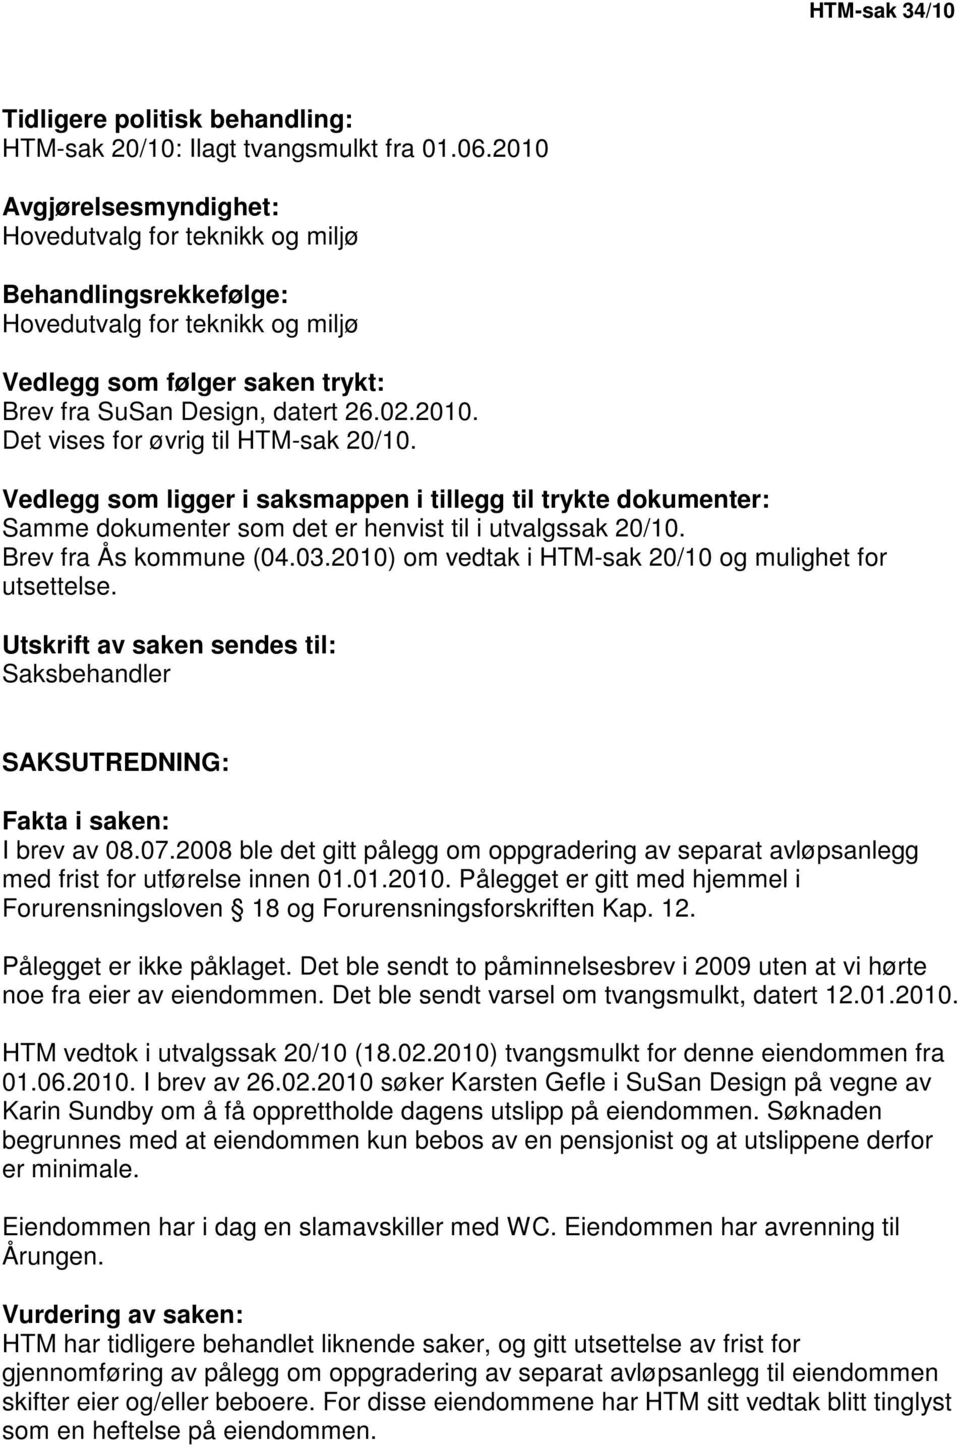 Vedlegg som ligger i saksmappen i tillegg til trykte dokumenter: Samme dokumenter som det er henvist til i utvalgssak 20/10. Brev fra Ås kommune (04.03.